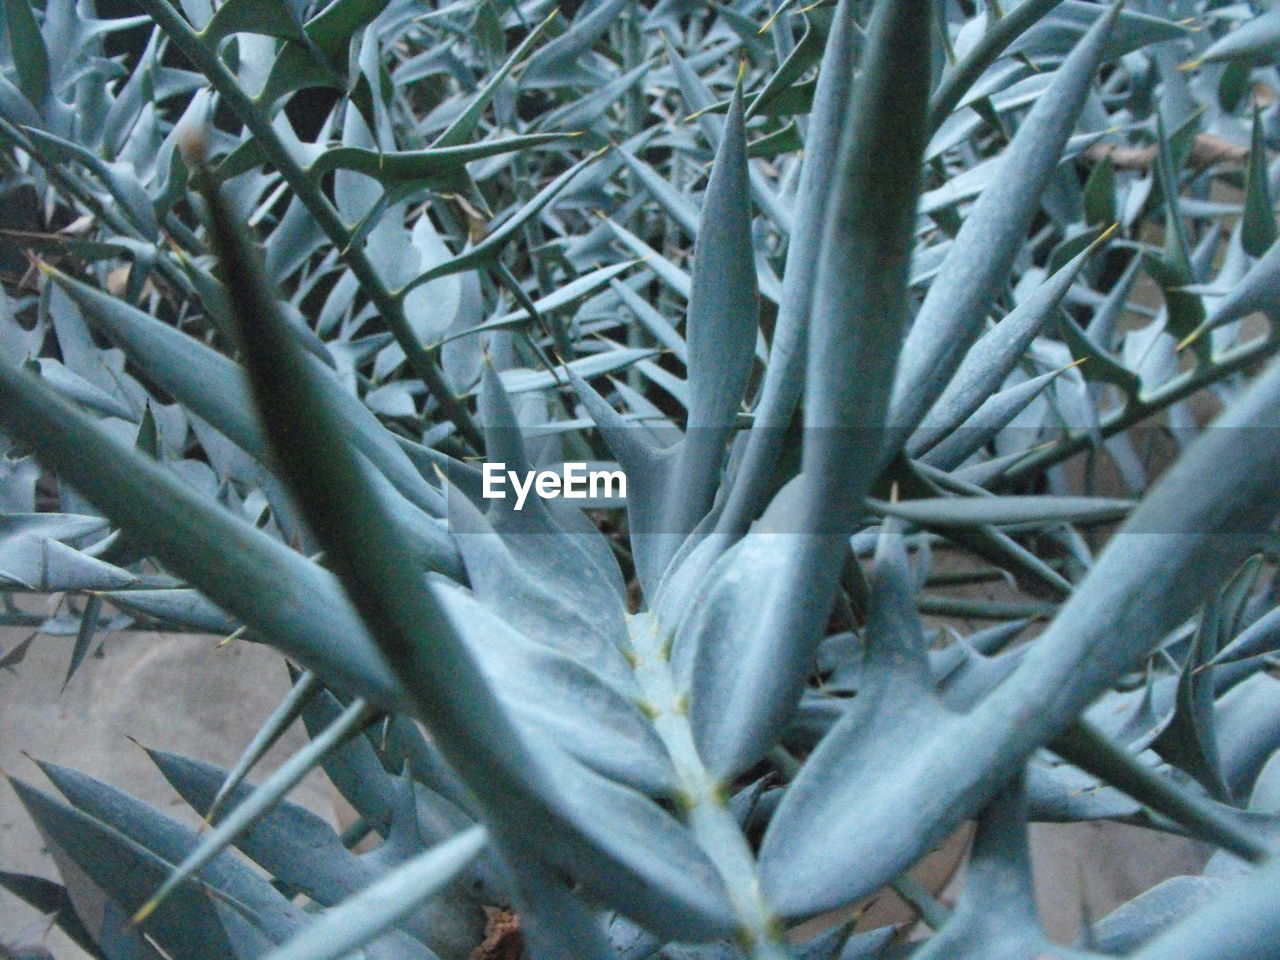 Detail shot of cactus plants